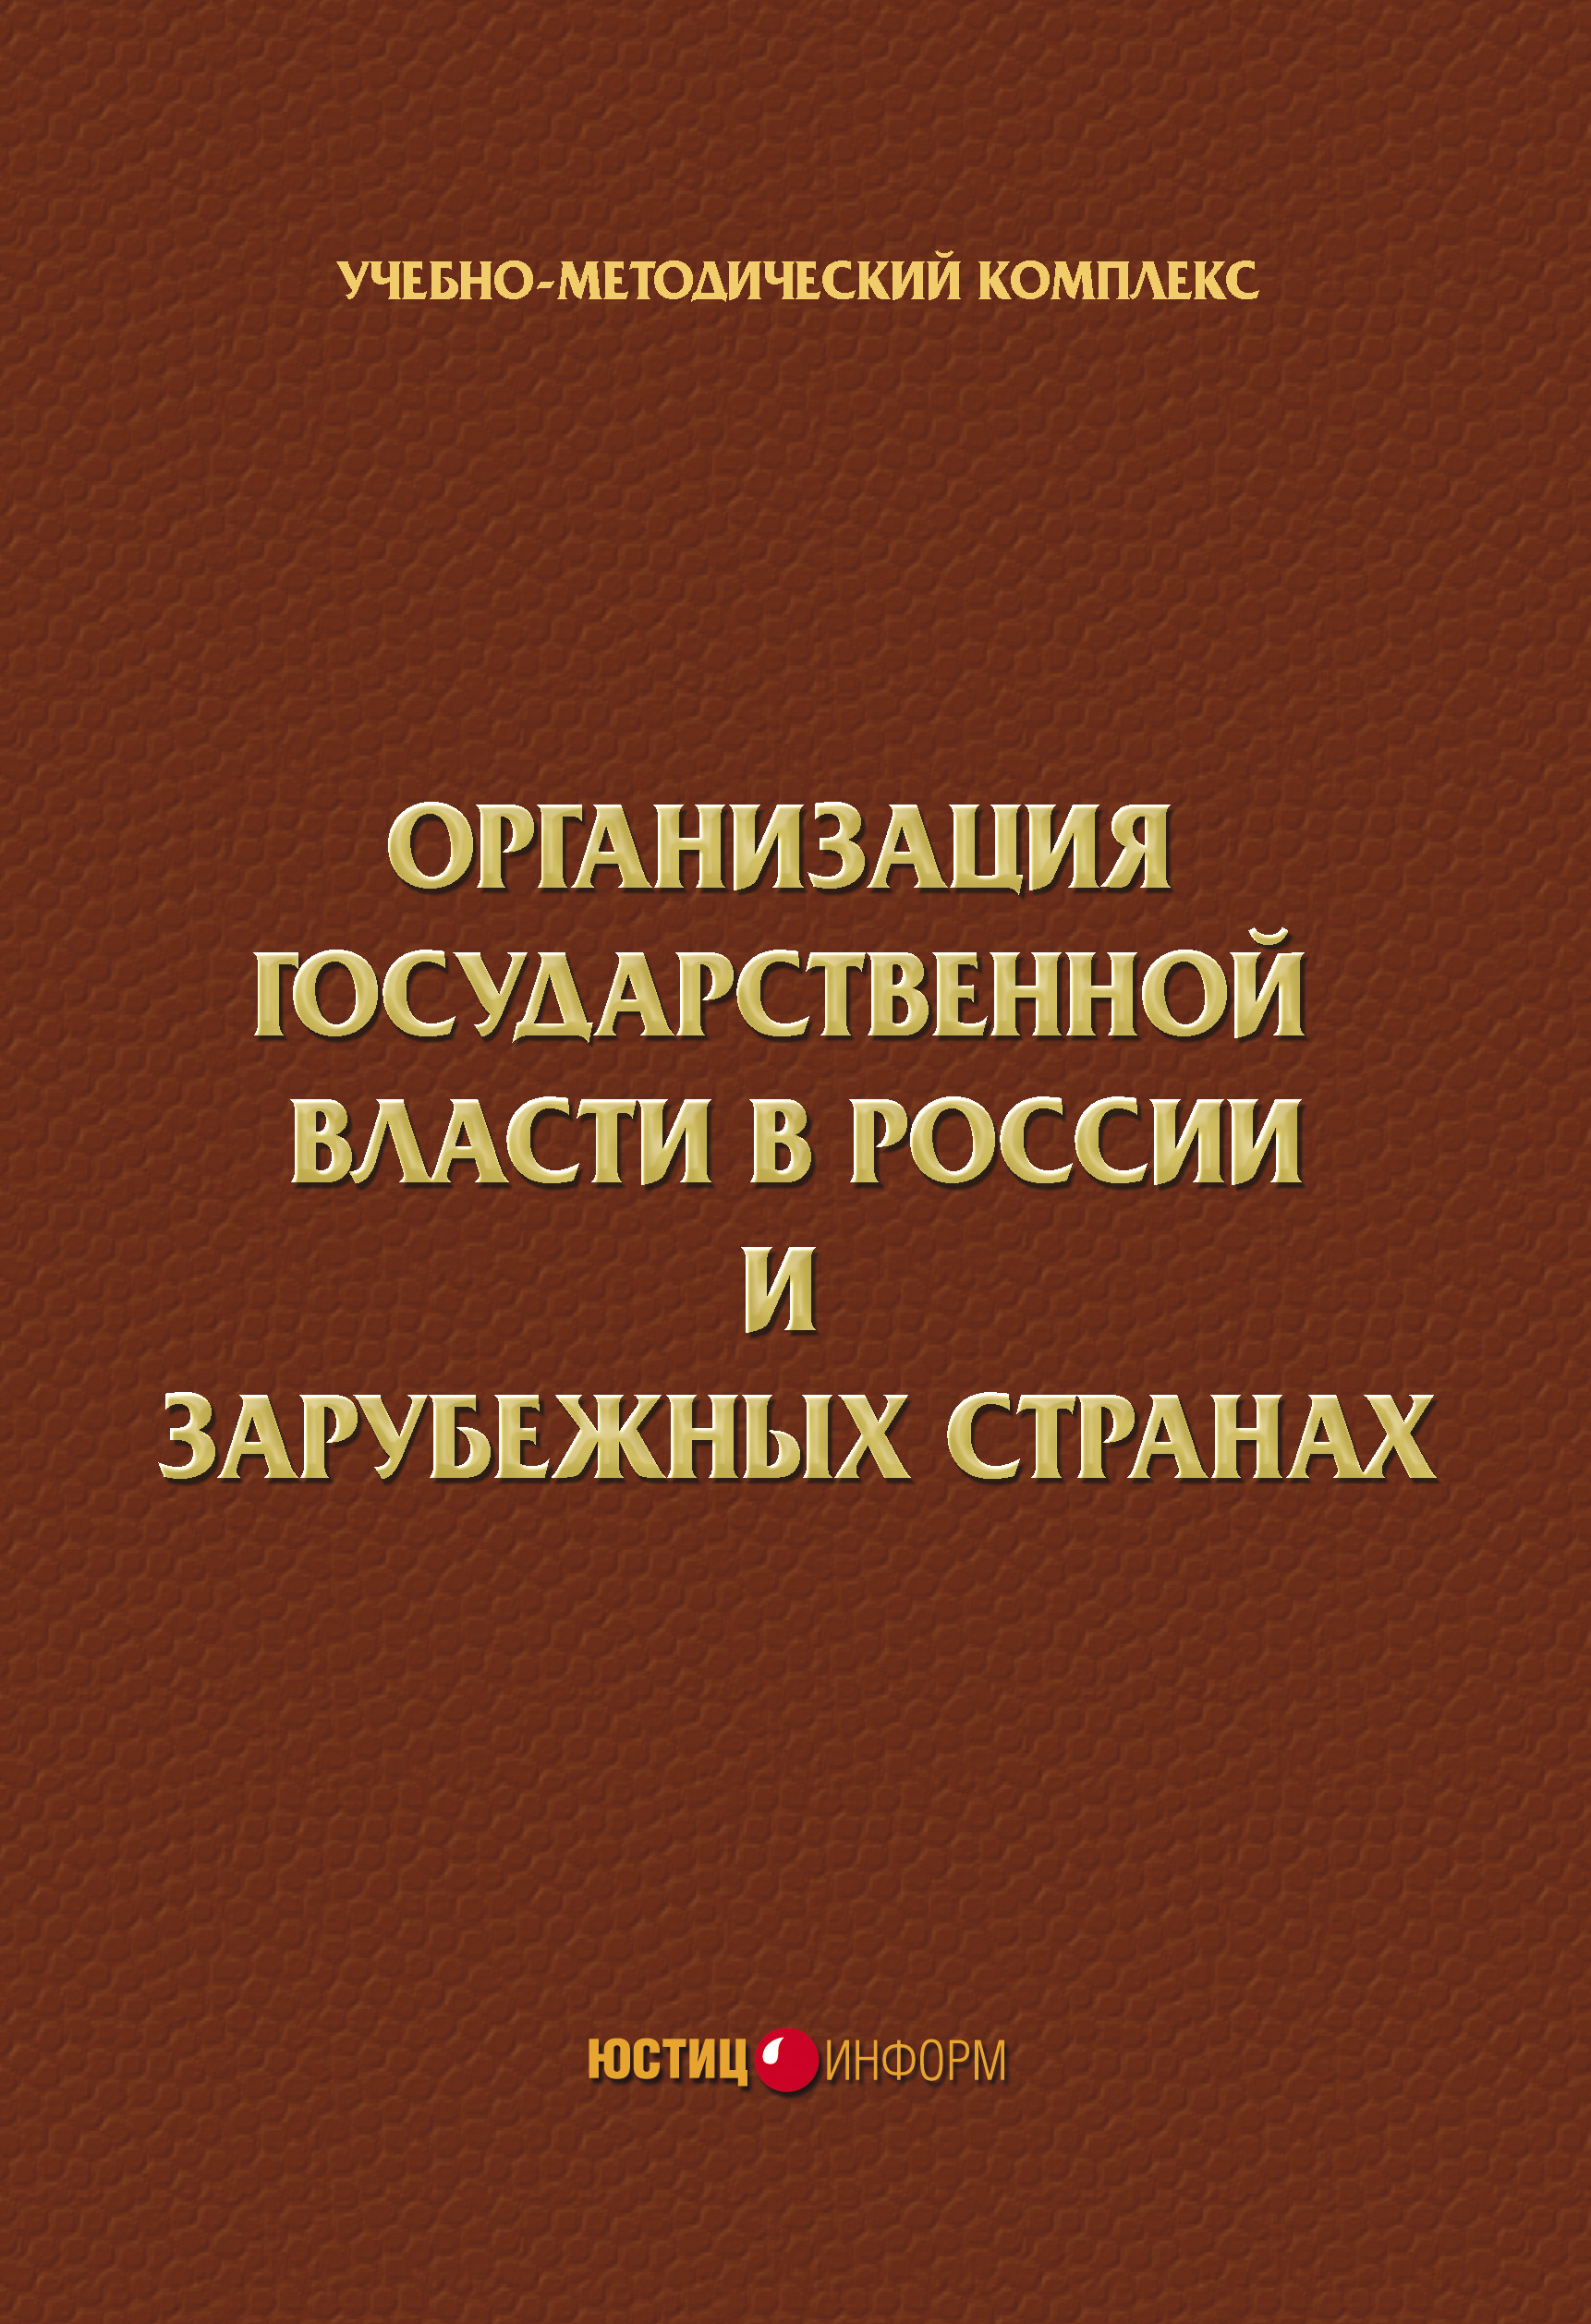 Организация государственной власти в России и зарубежных странах. Учебно-методический комплекс